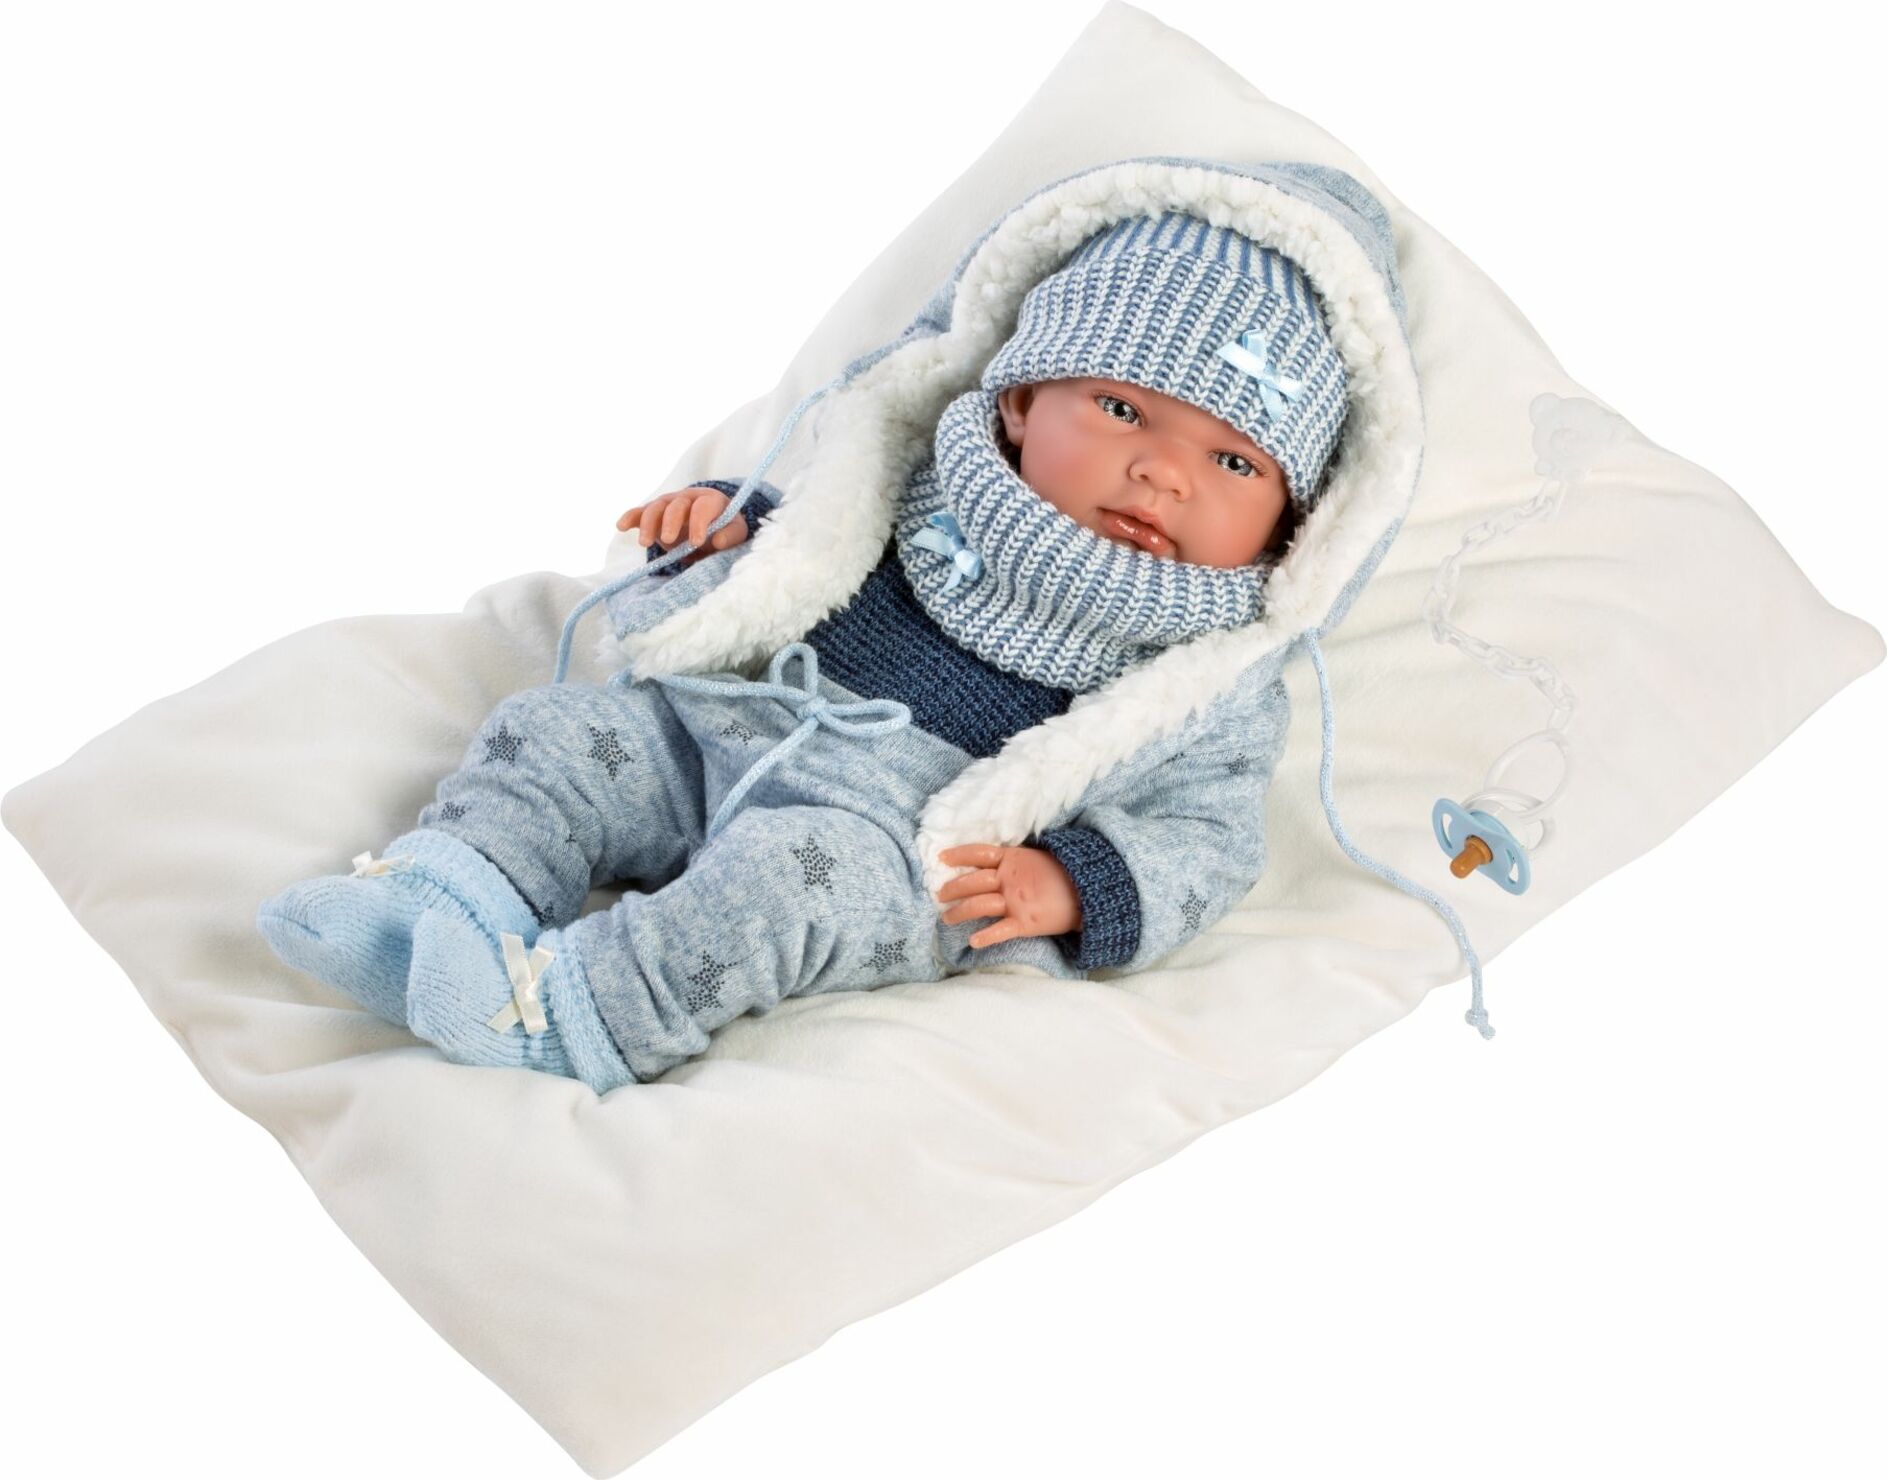 Llorens 73881 NEW BORN CHLAPEK - realistická panenka miminko s celovinylovým tělem - 40